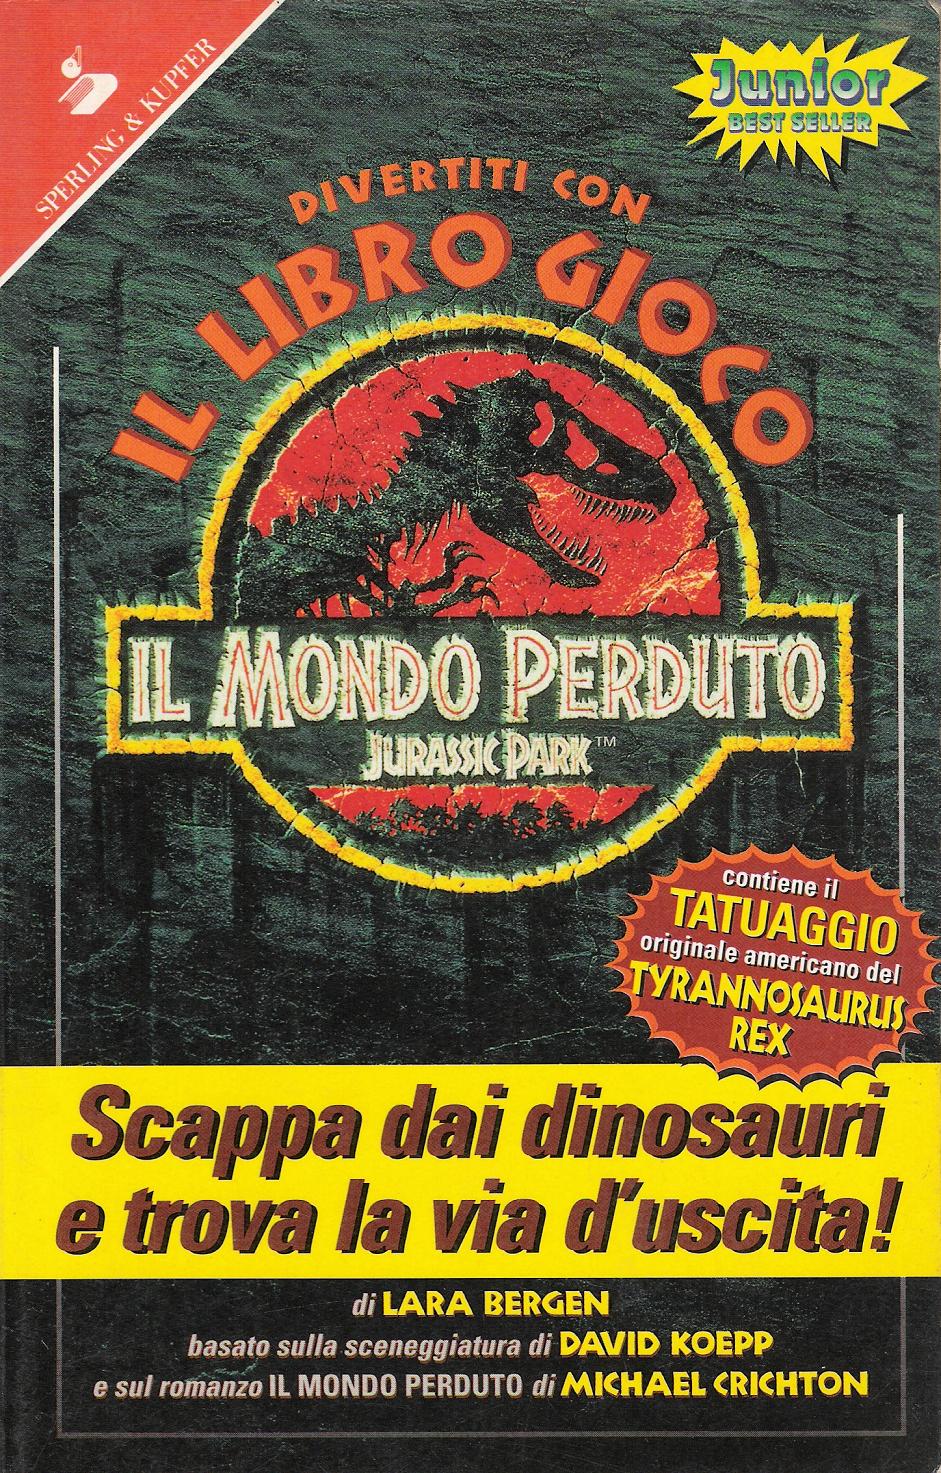 Item - Divertiti con il libro gioco Il mondo perduto: Jurassic Park -  Demian's Gamebook Web Page